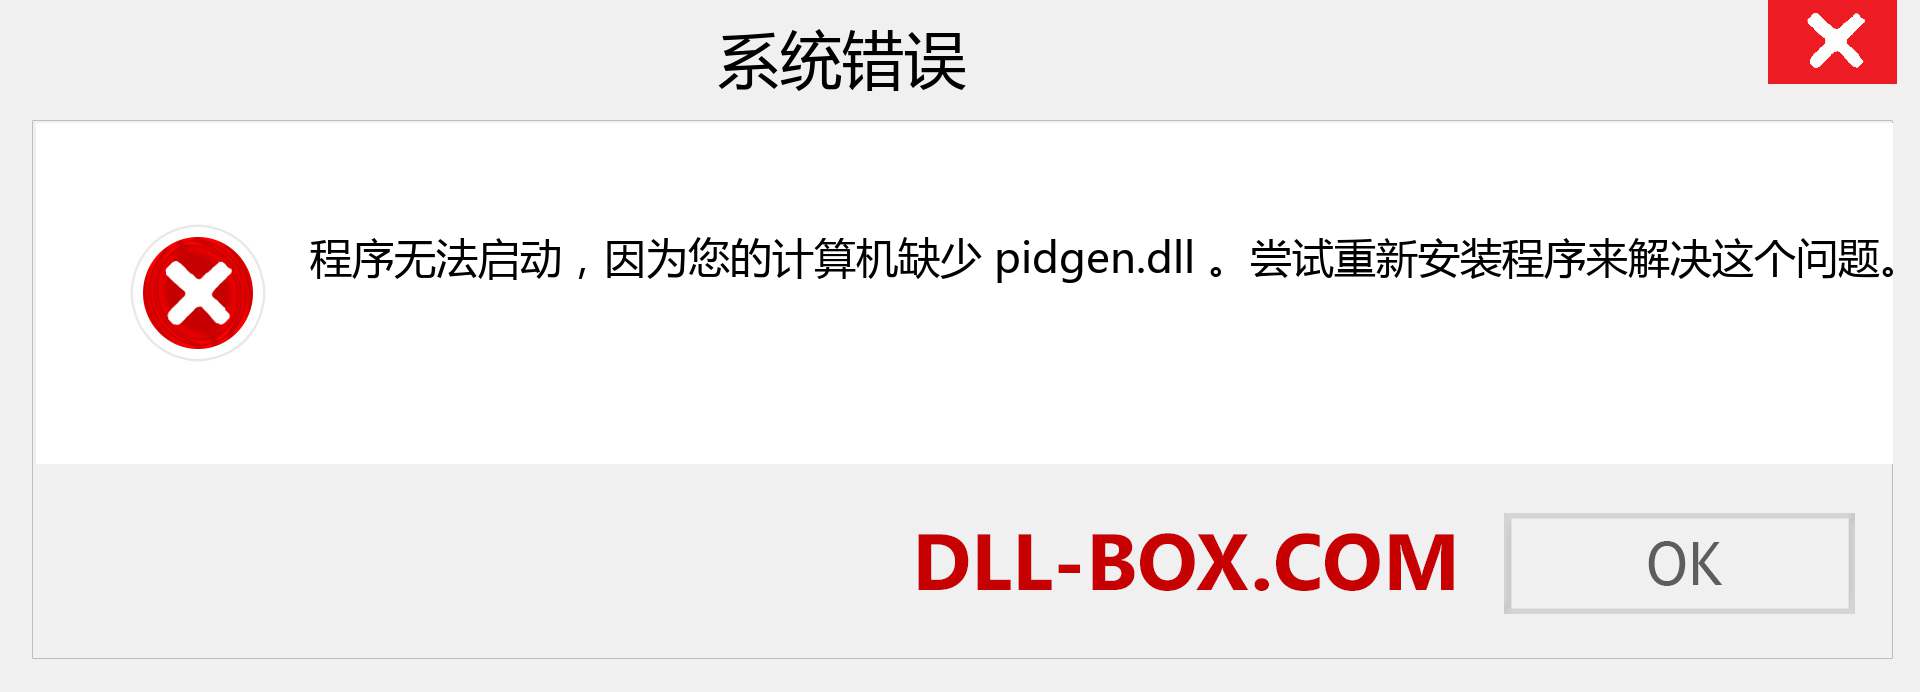 pidgen.dll 文件丢失？。 适用于 Windows 7、8、10 的下载 - 修复 Windows、照片、图像上的 pidgen dll 丢失错误